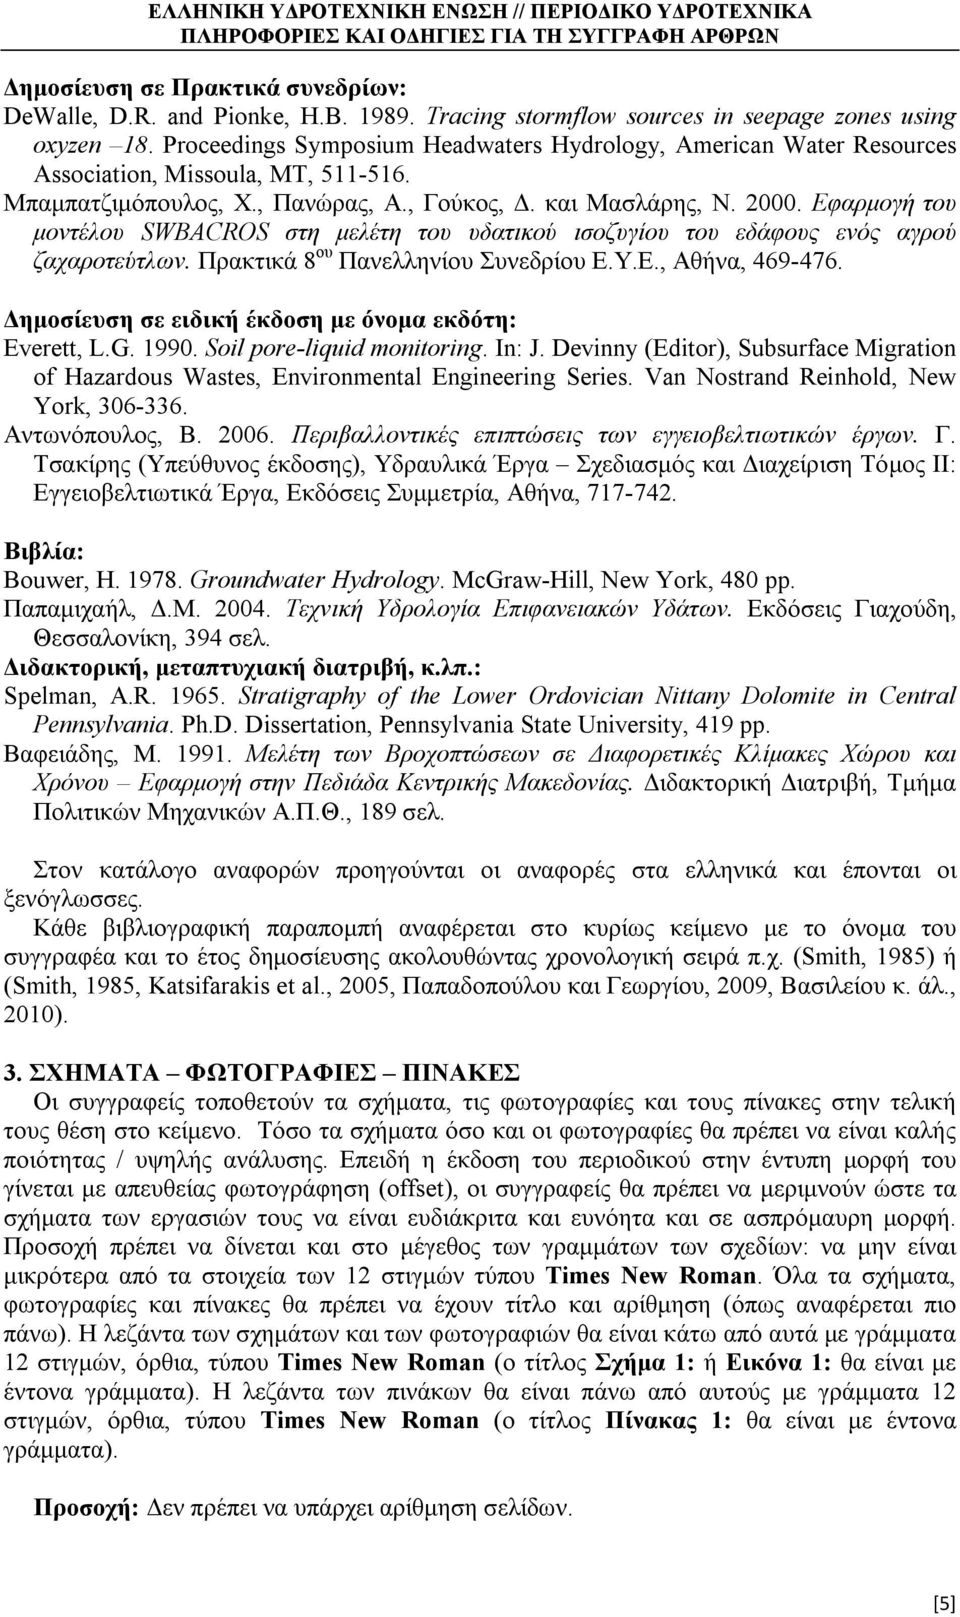 ζαχαροτεύτλων Πρακτικά 8 ου Πανελληνίου Συνεδρίου ΕΥΕ, Αθήνα, 469-476 Δημοσίευση σε ειδική έκδοση με όνομα εκδότη: Everett, LG 1990 Soil pore-liquid monitoring In: J Devinny (Editor), Subsurface